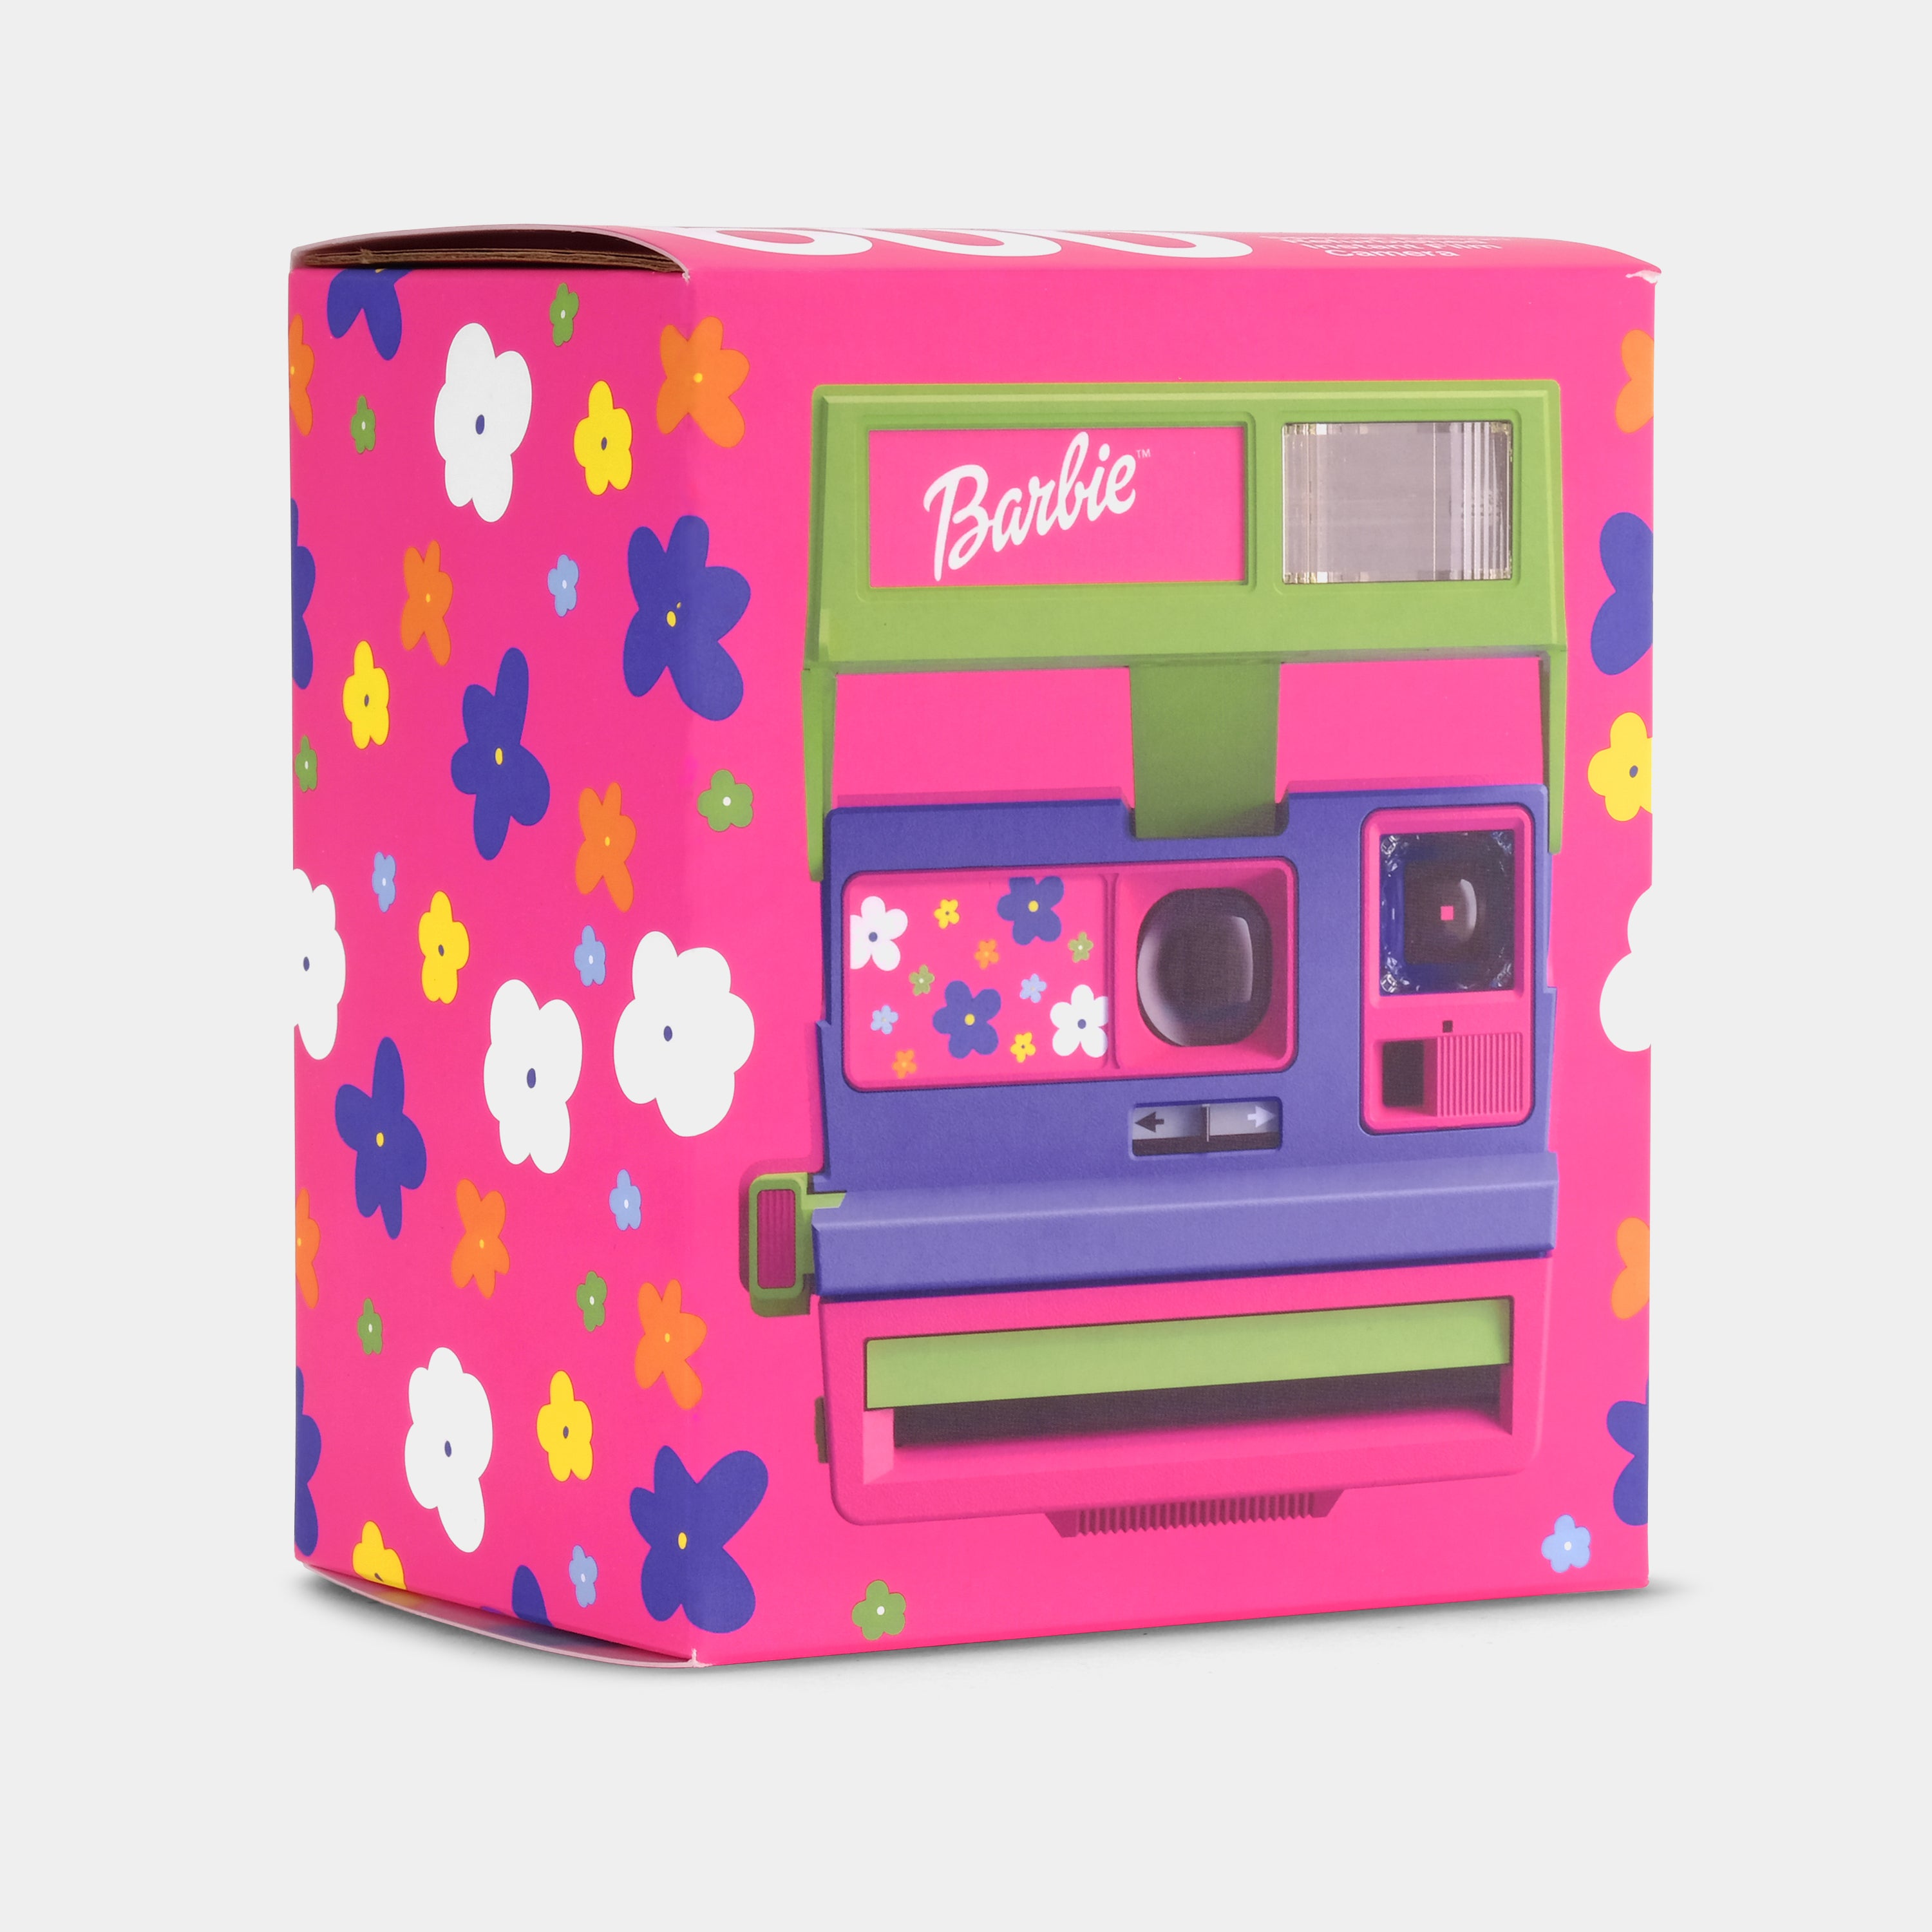 Polaroid 600 Barbie Throwback Instant Film Camera